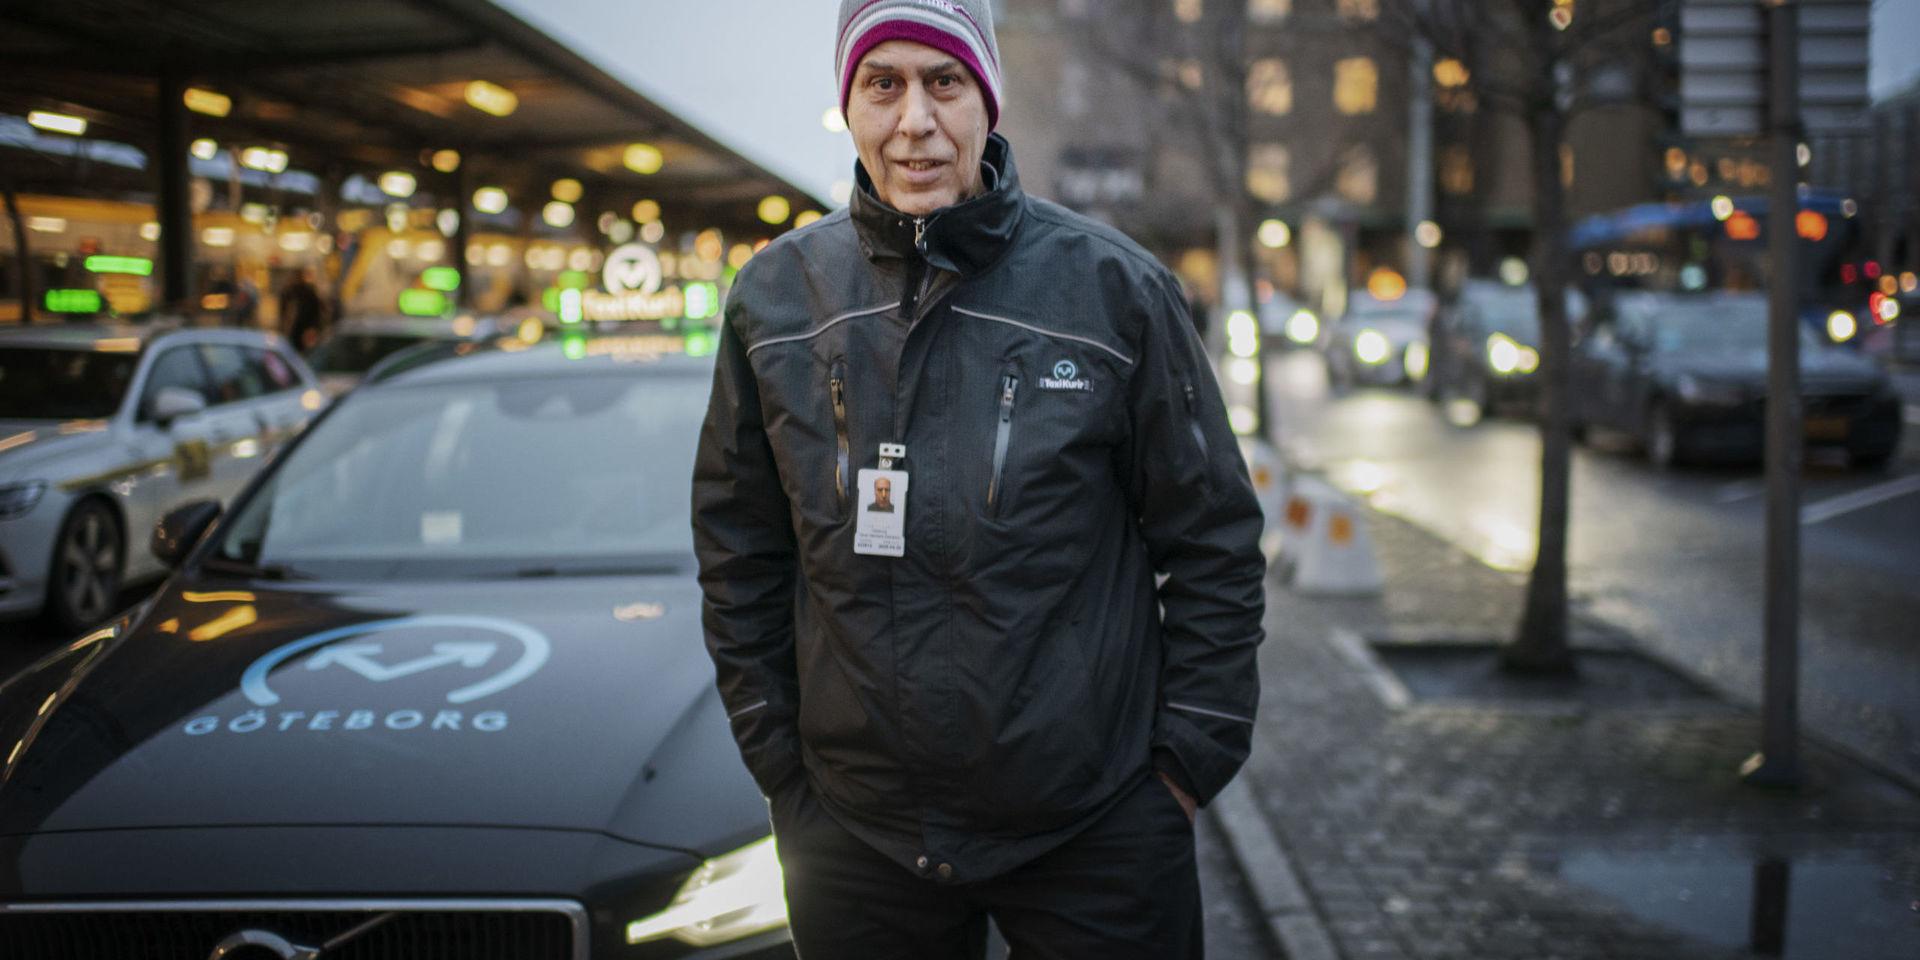 Tahar Hachemi Zakraoui, 62, tänker fortsätta på samma spår i karriären: &quot;Jag ska köra taxi, som alltid! Det kommer jag aldrig att släppa. Jag älskar mitt jobb, man får träffa nya, trevliga människor varje dag.&quot;